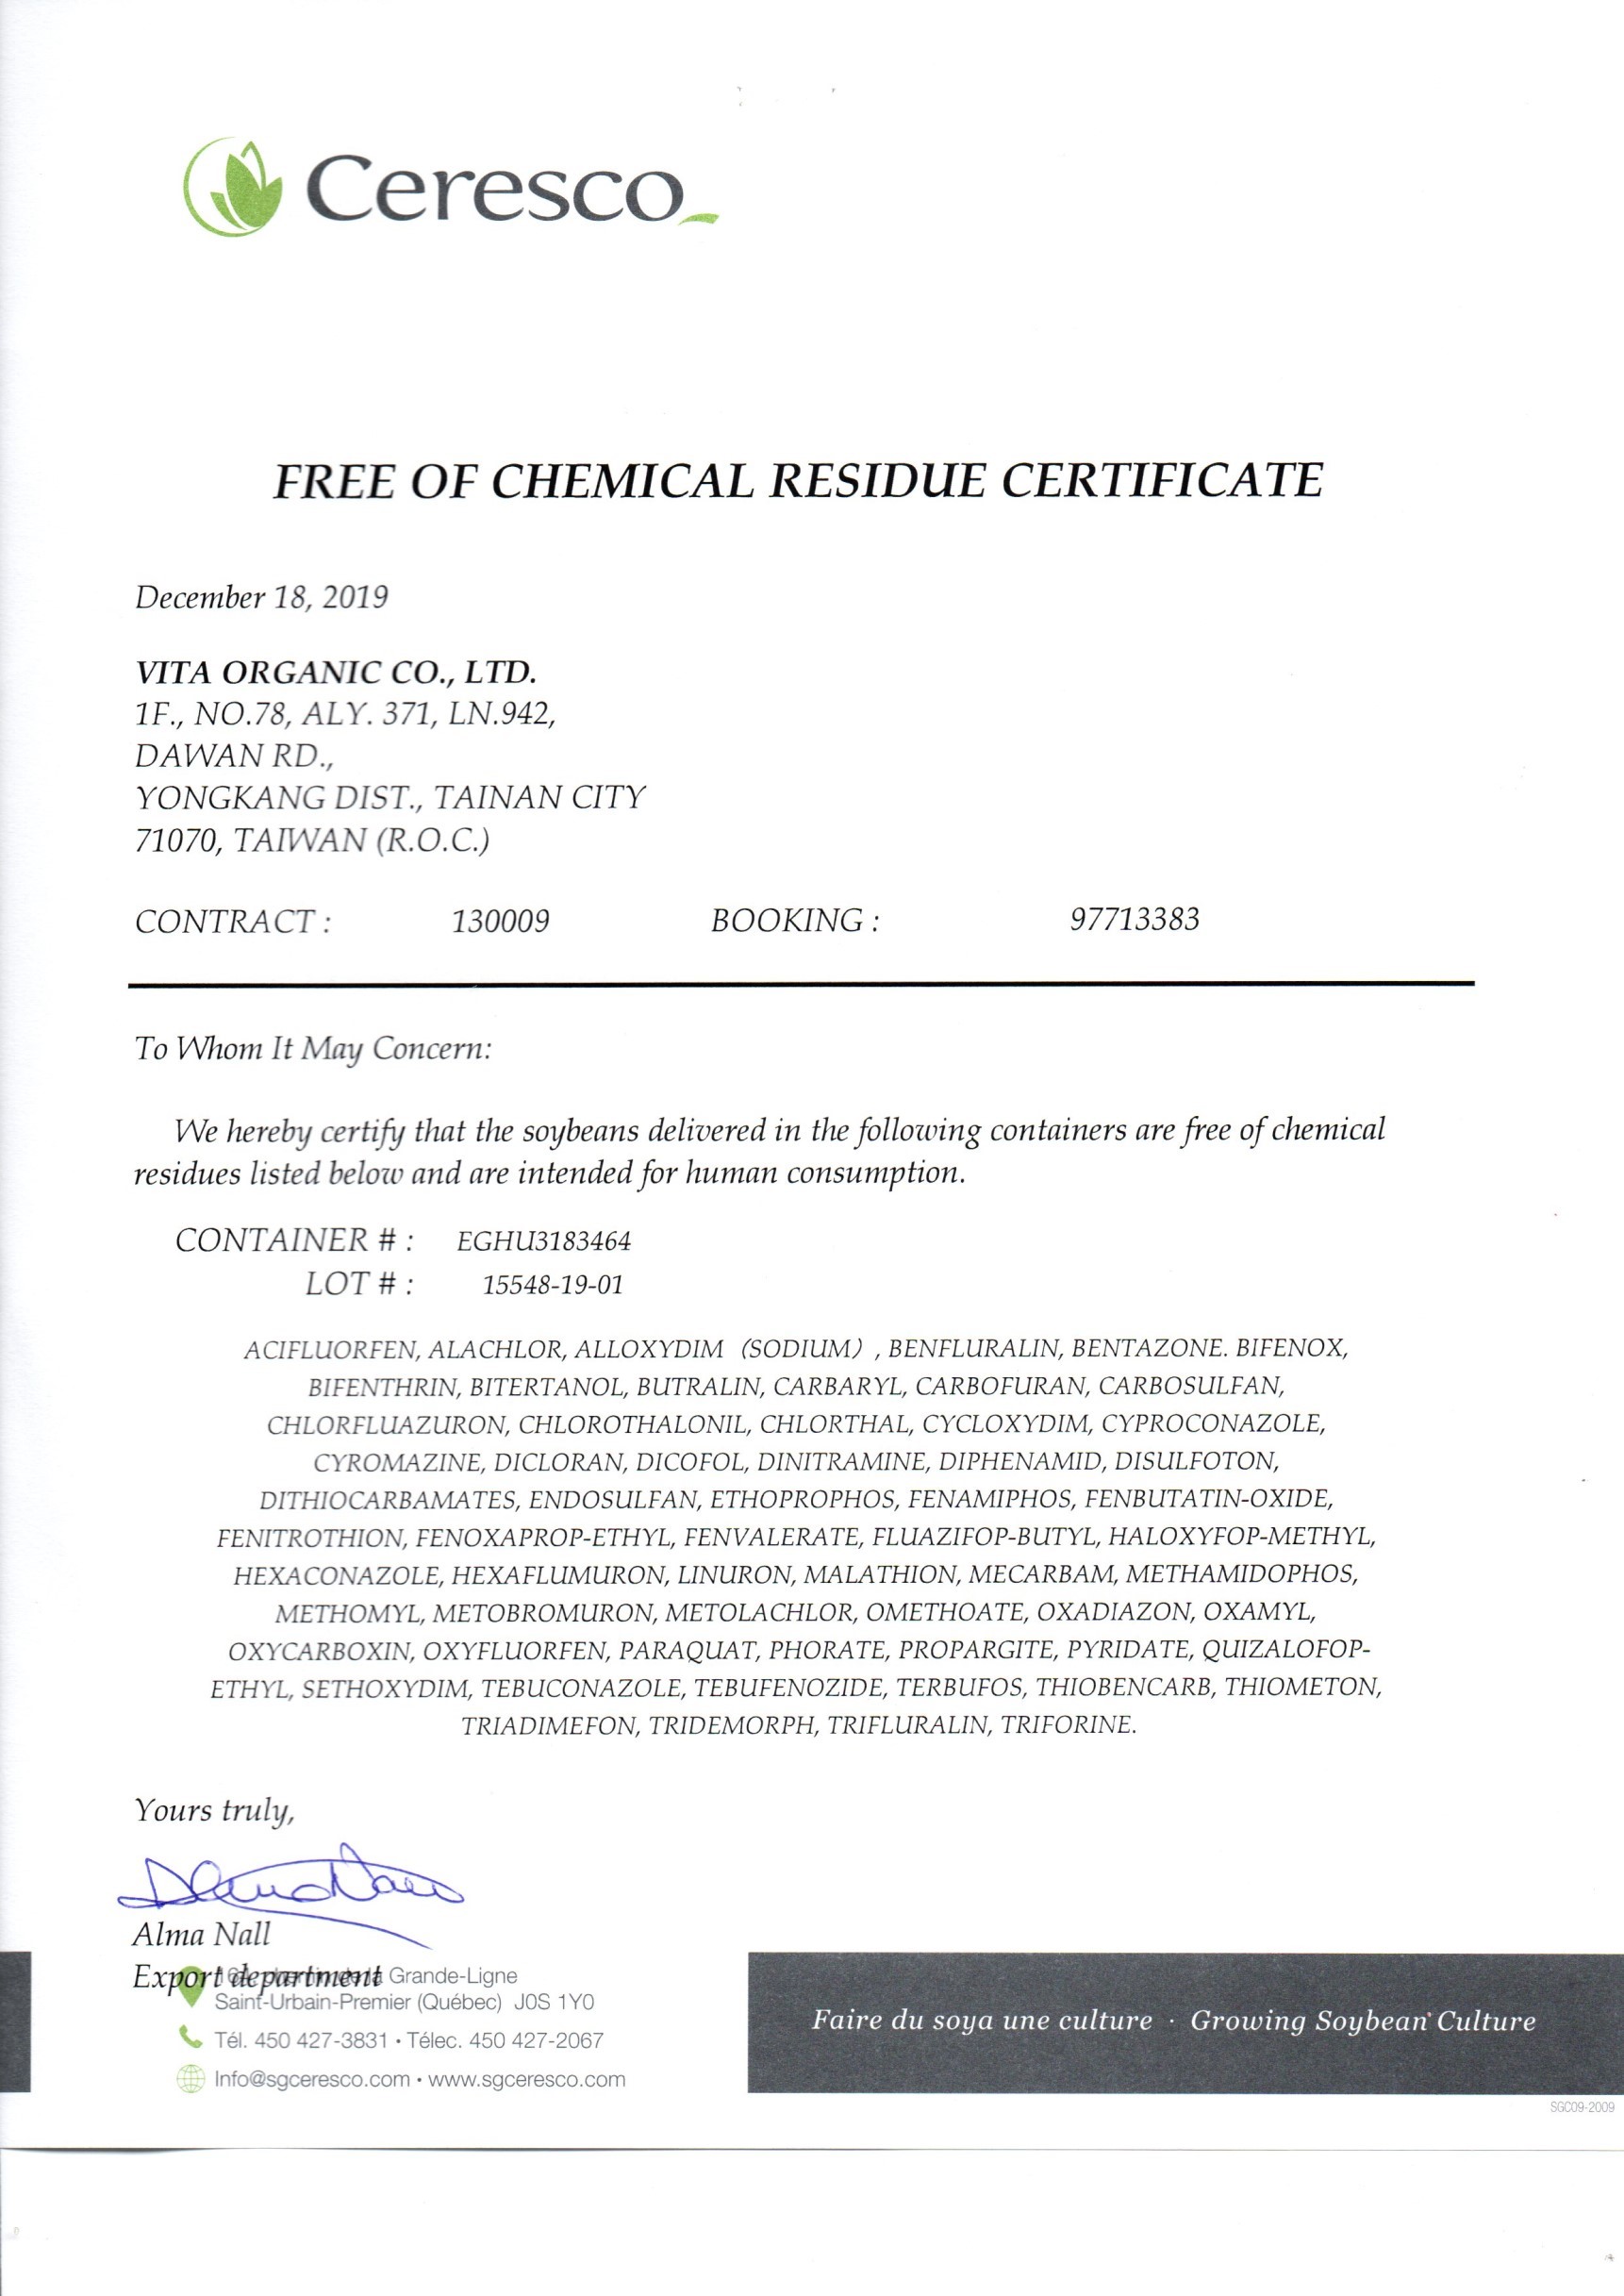 加拿大SG有機黃豆-無化學殘留證書